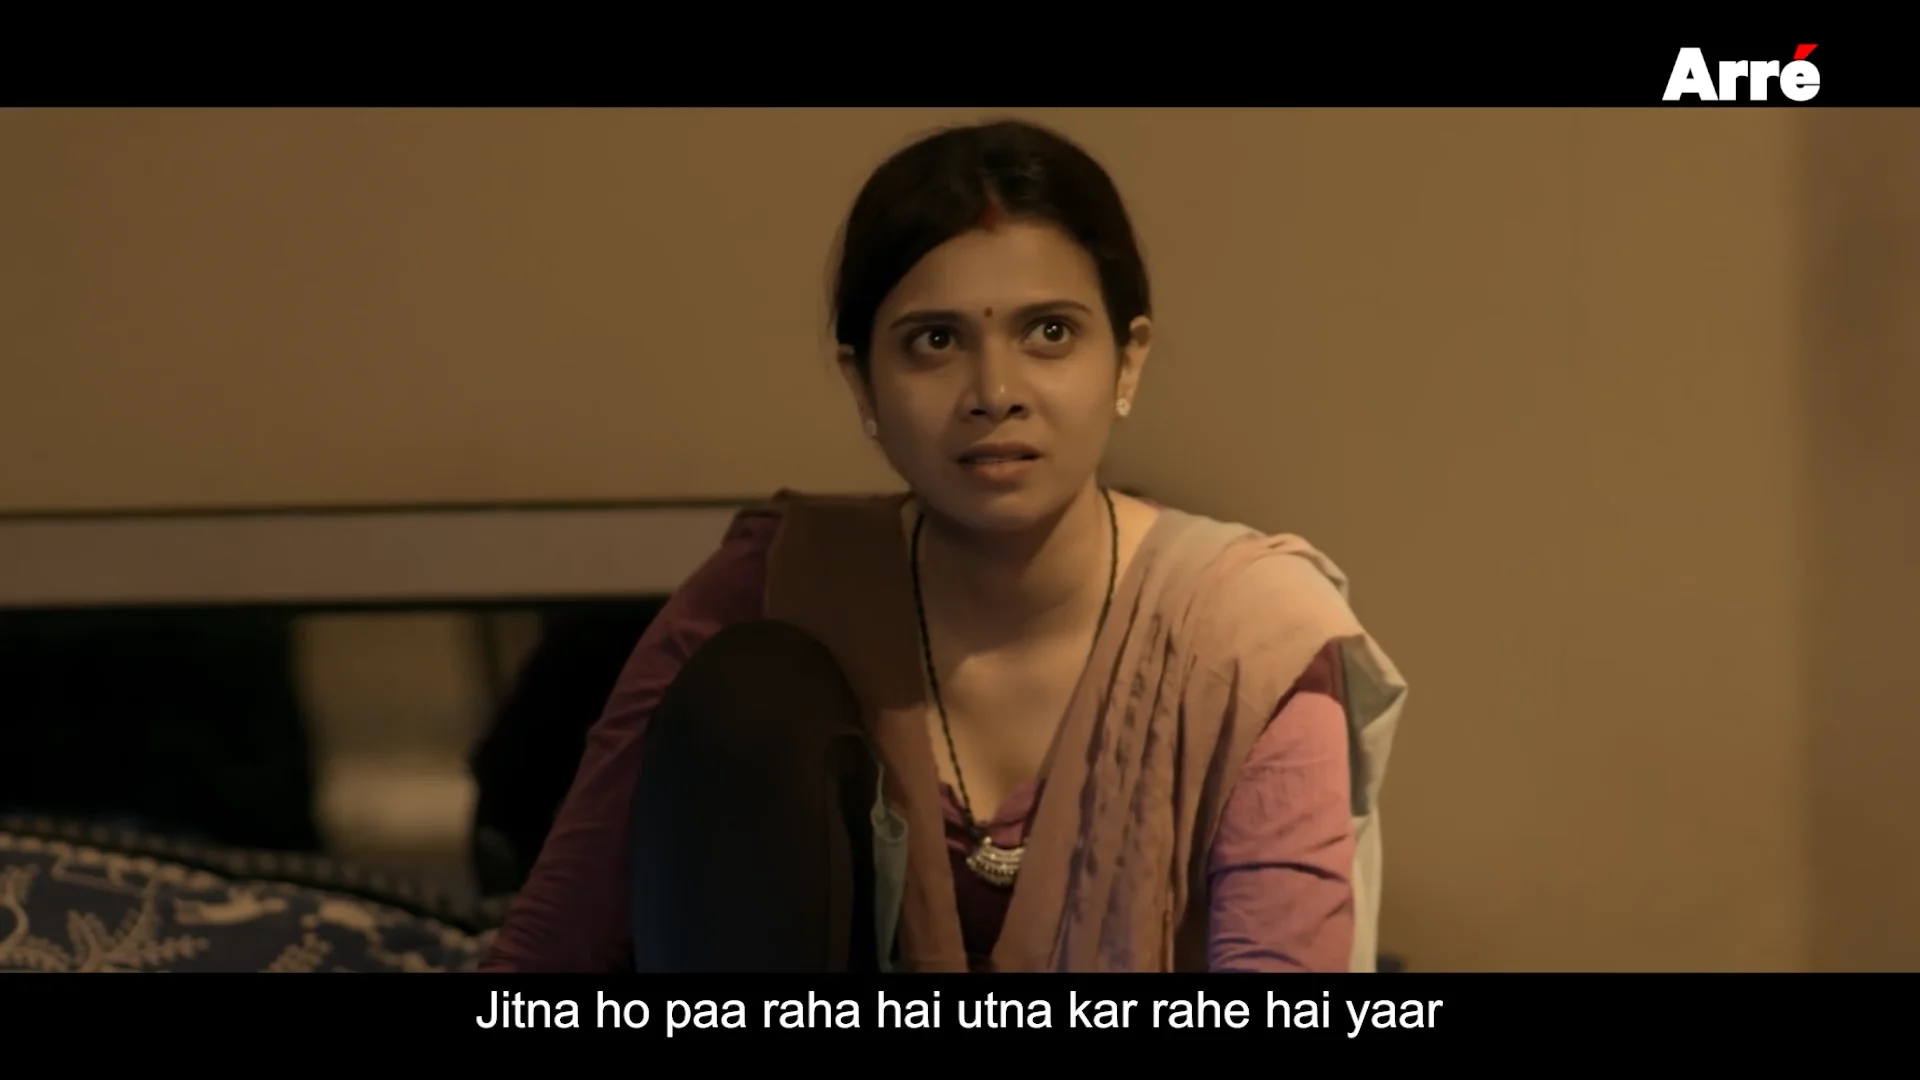 Reshmi Sex Video - Pati, Patni Aur Washing Machine (à¤ªà¤¤à¤¿ à¤ªà¤¤à¥à¤¨à¥€ à¤”à¤° à¤µà¤¾à¤¶à¤¿à¤‚à¤— à¤®à¤¶à¥€à¤¨) ft. Shreya Gupto  & Nikhil Vijay (1080p) on Vimeo